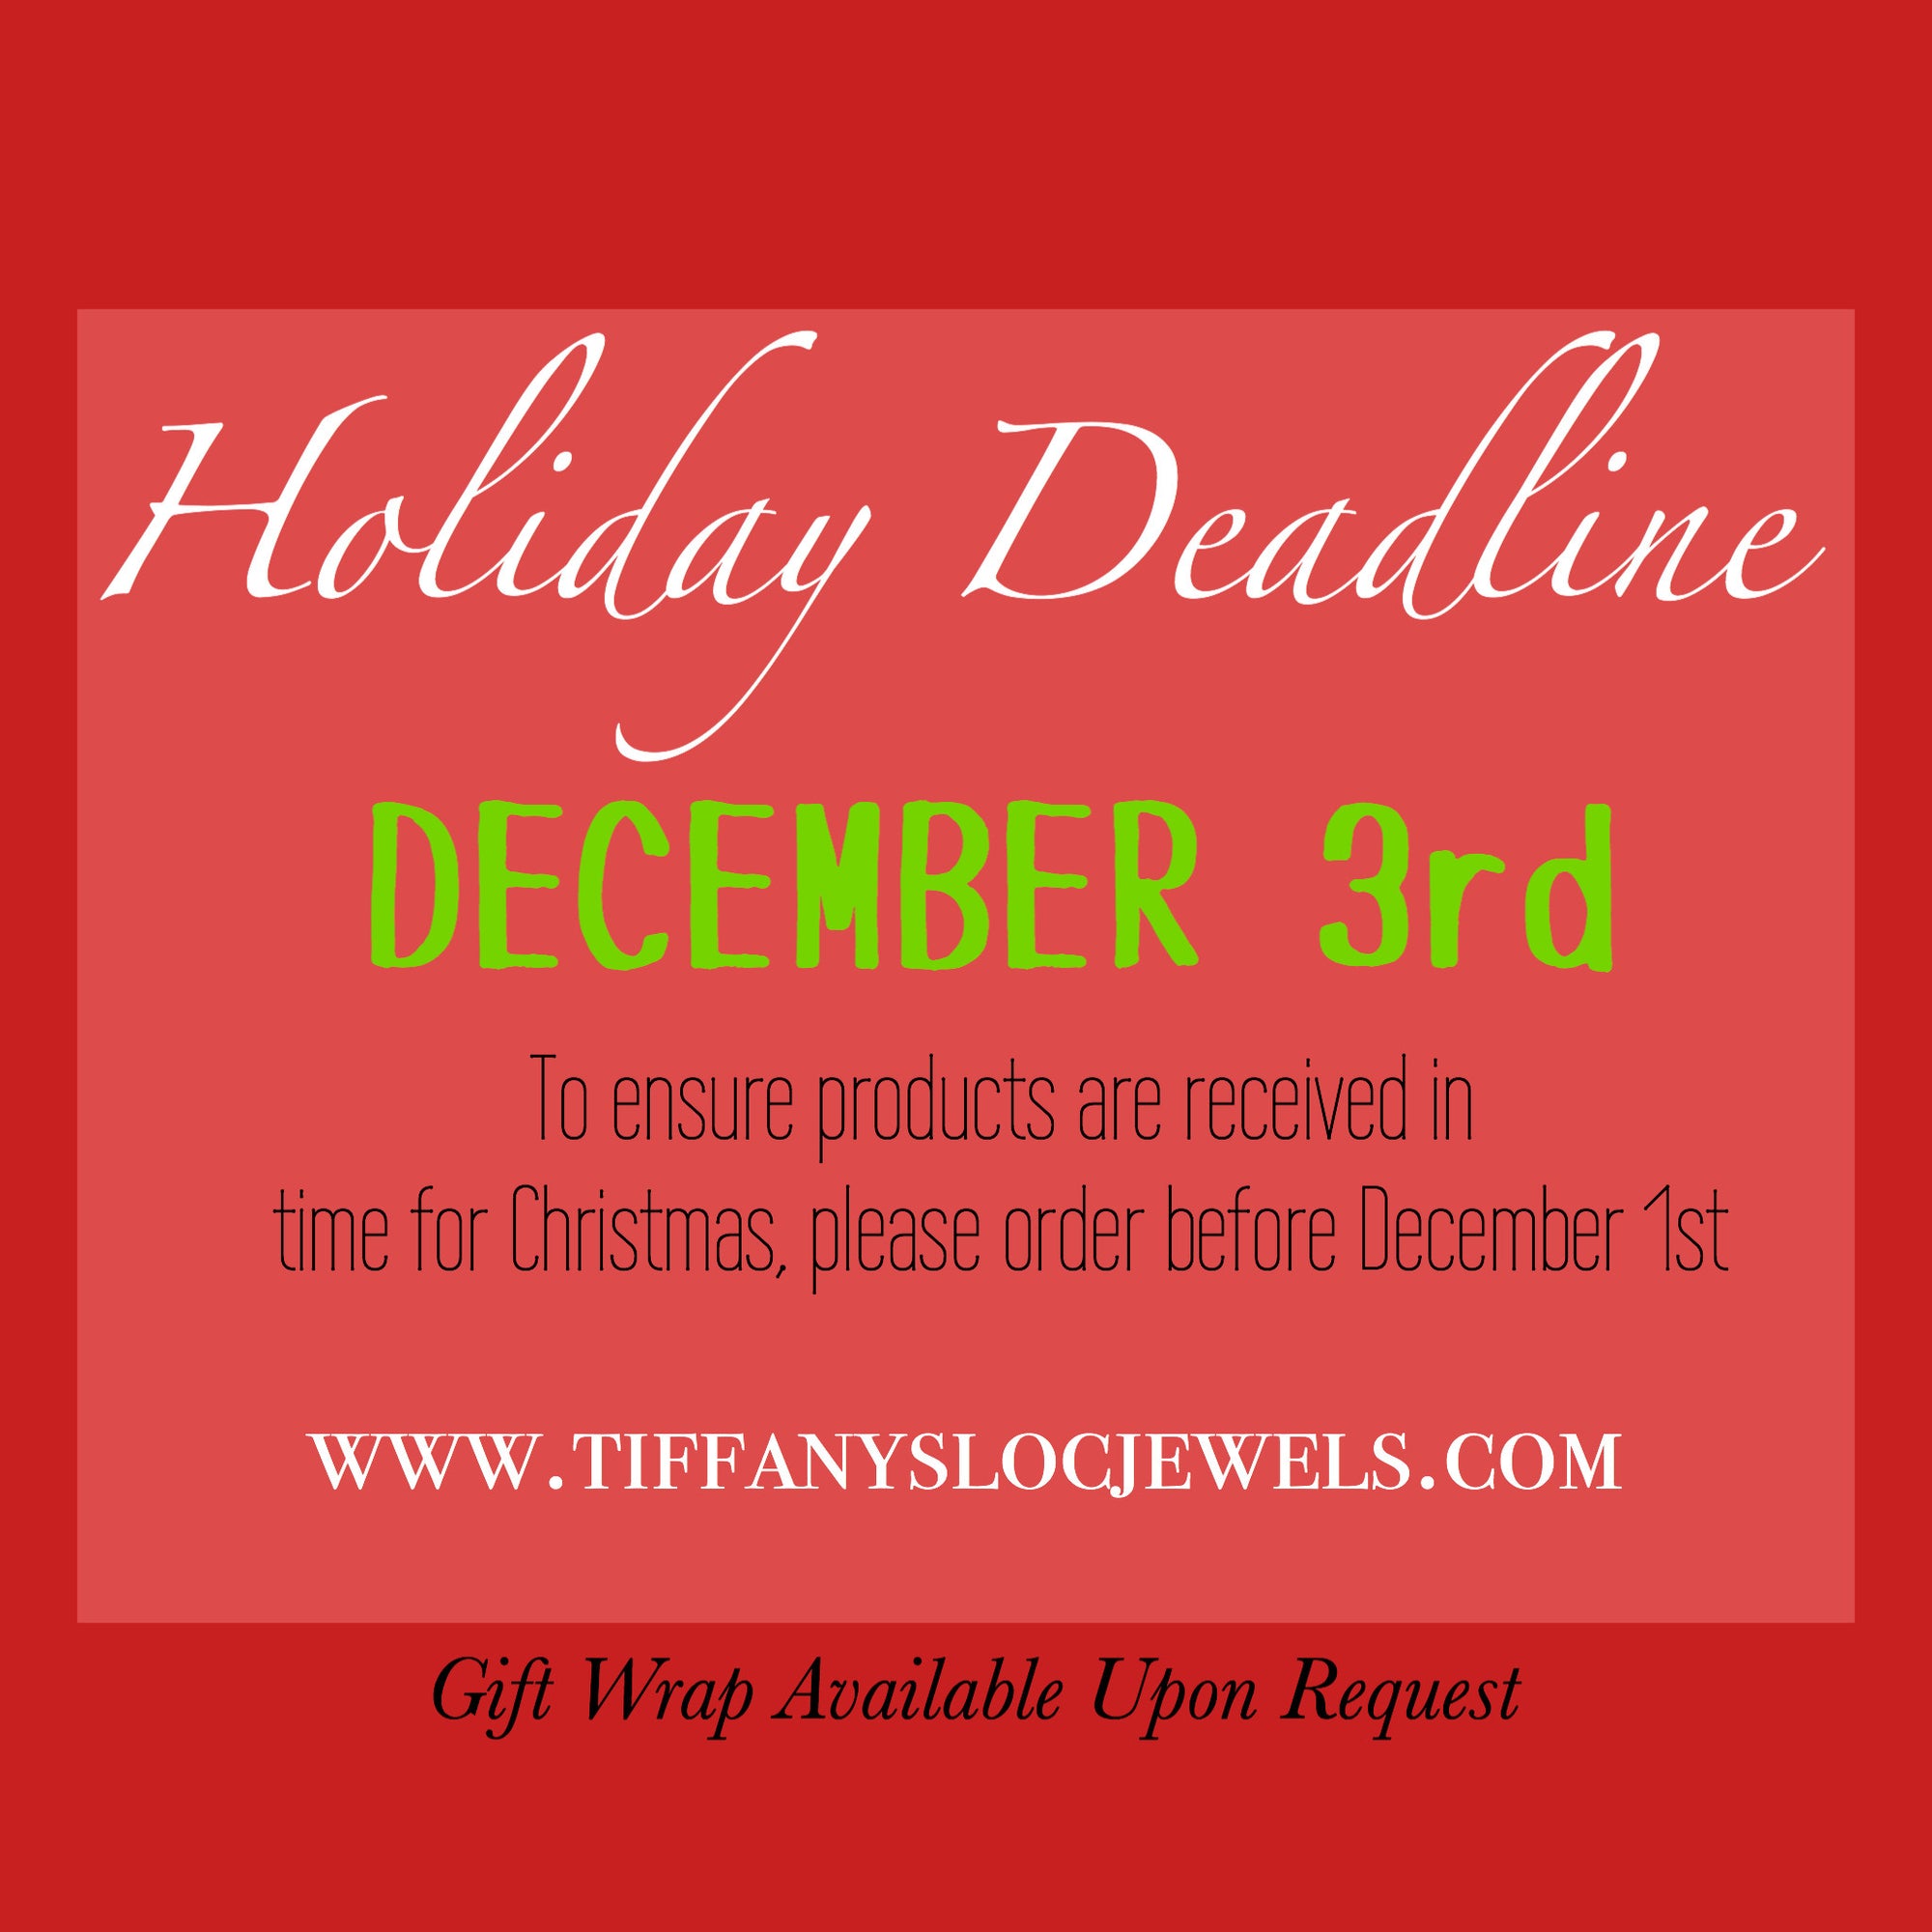 Deadlines for Christmas!!!